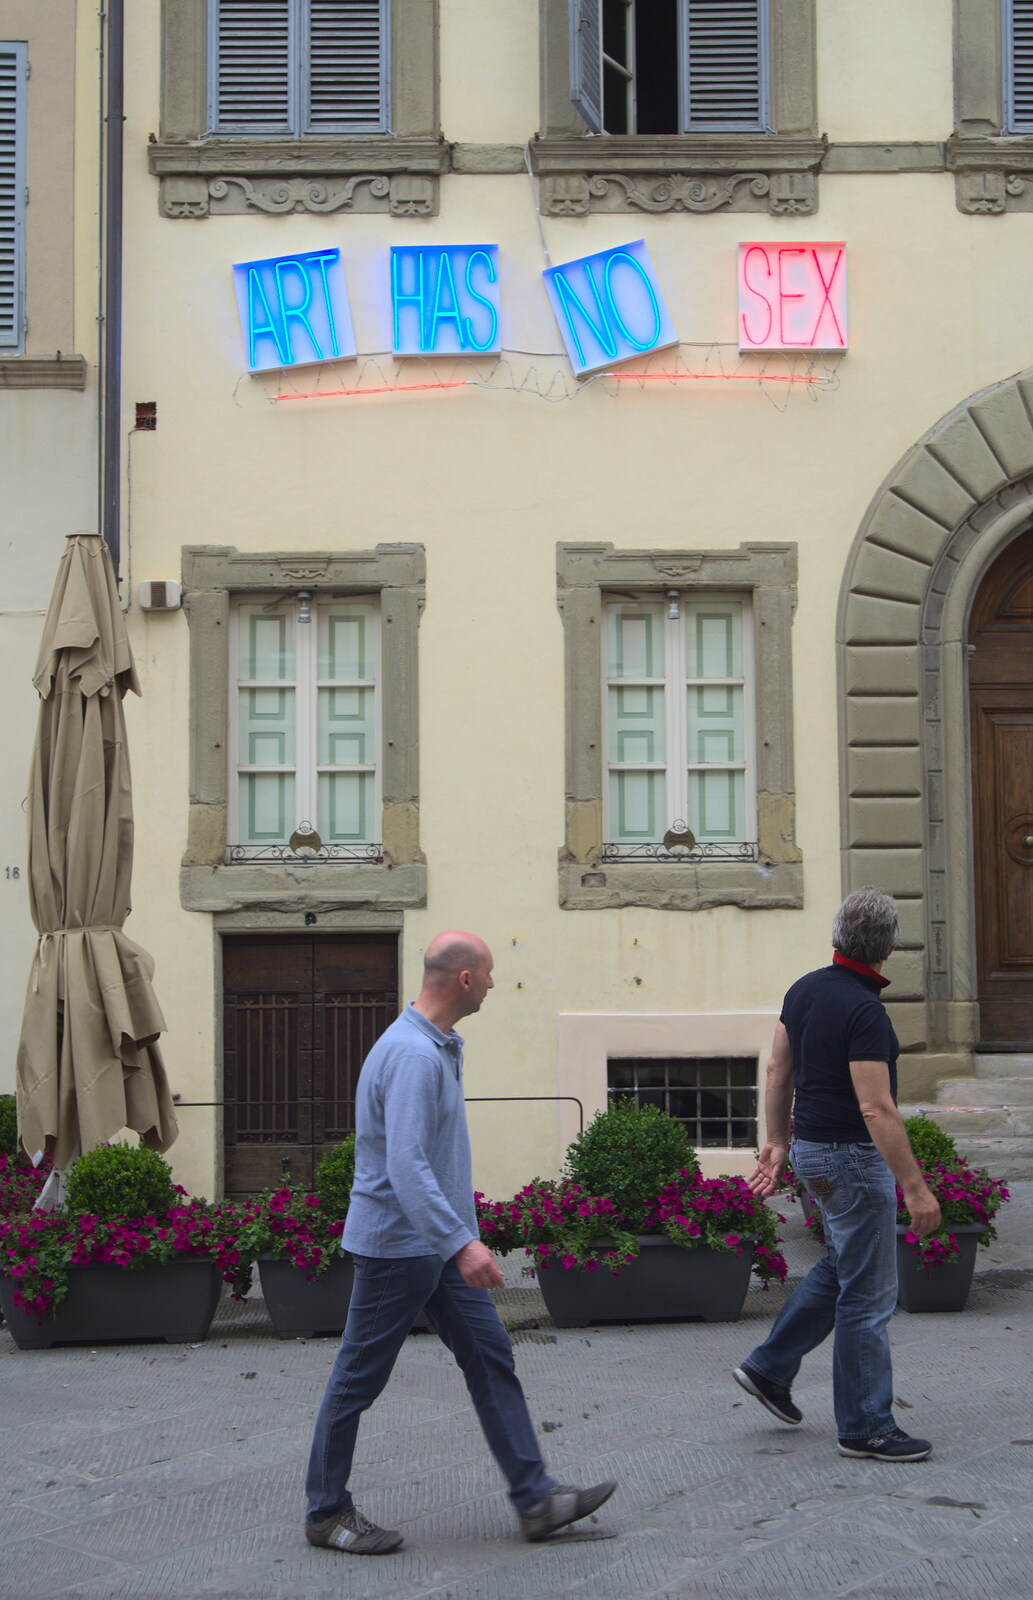 Marconi, Arezzo and the Sagra del Maccherone Festival, Battifolle, Tuscany - 9th June 2013: More installation: 'Art has no sex'